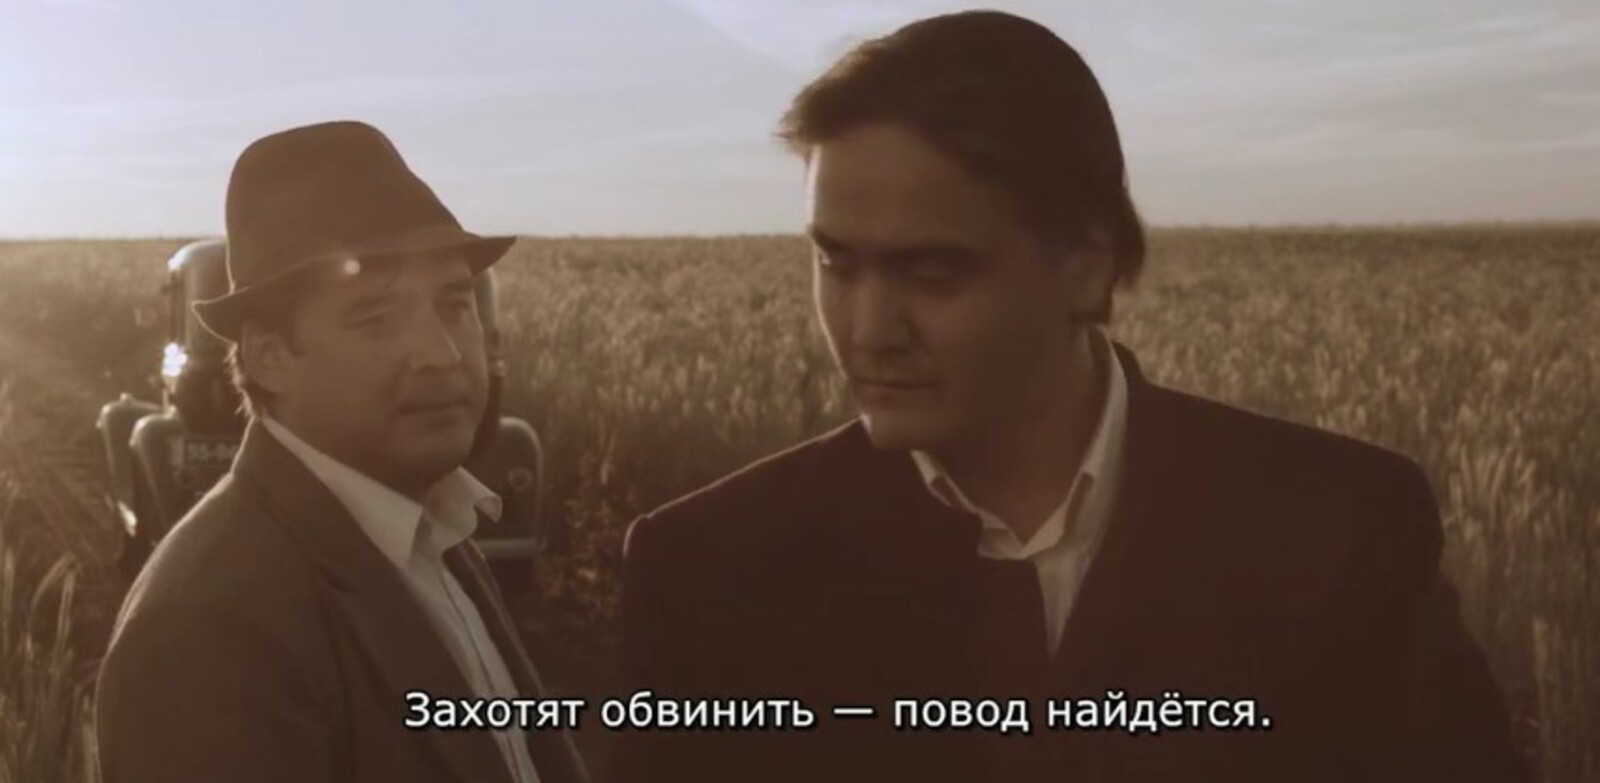 В Калтасах состоялся бесплатный показ фильма "Первая республика"